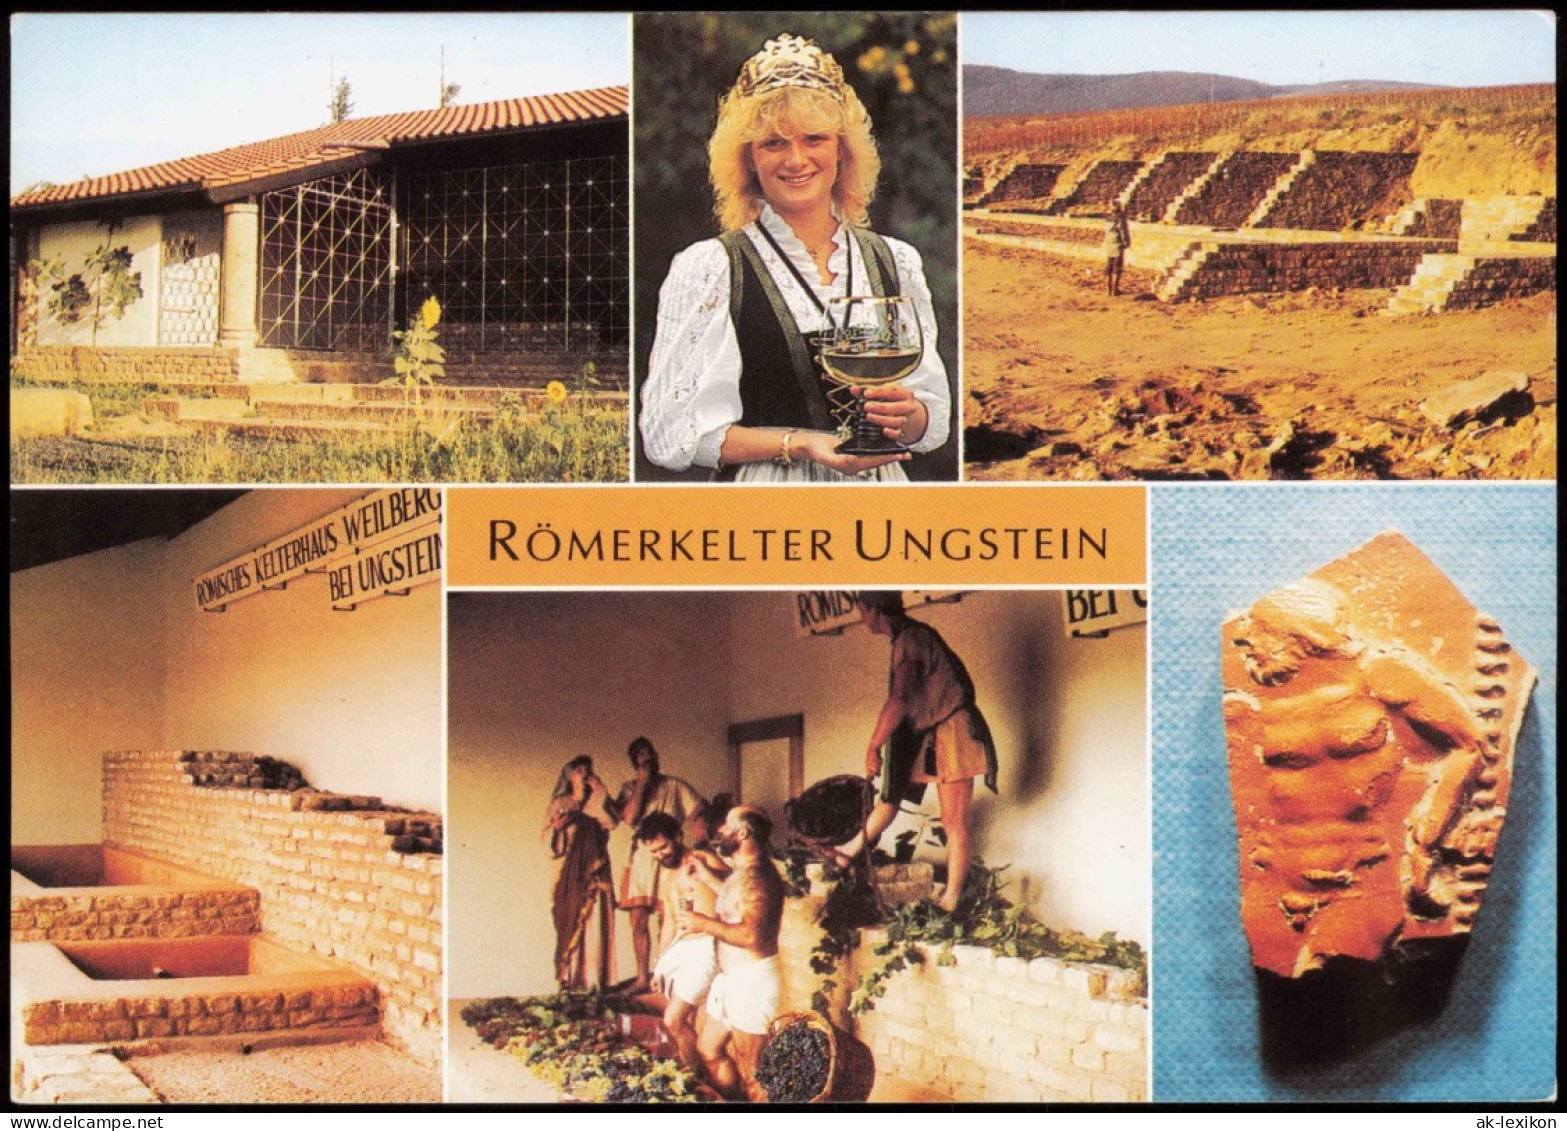 Ungstein-Bad Dürkheim Römerkelter Ungstein Mit Weinkönigin MB 1987 - Bad Duerkheim